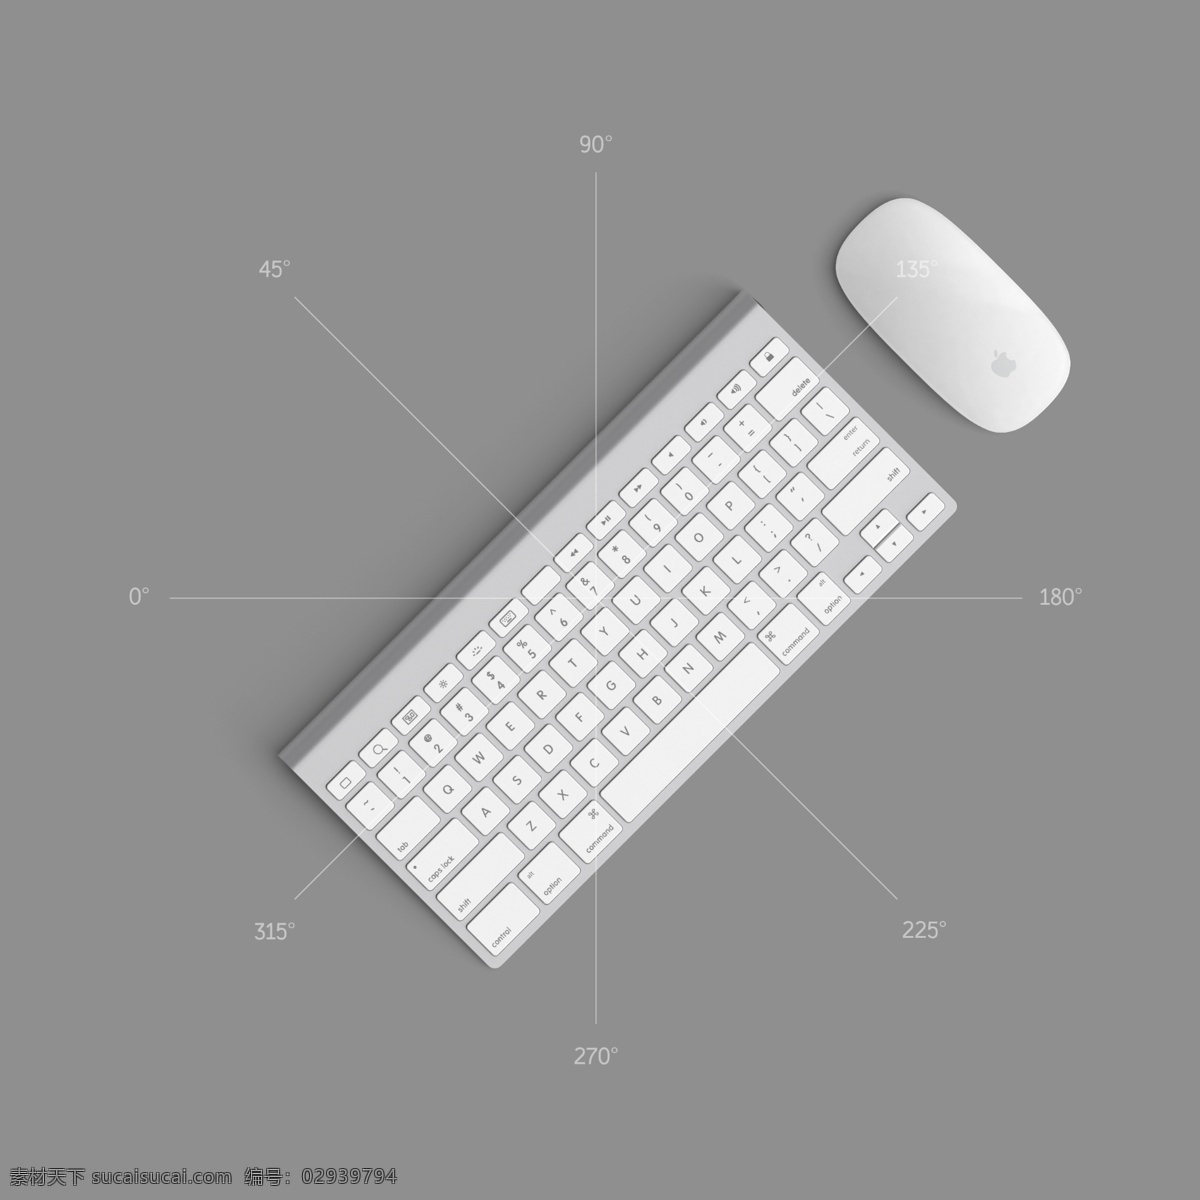 imac 键盘 多方向 作品展示 imac键盘 imac鼠标 苹果键盘 苹果鼠标 无线键盘 无线鼠标 分层